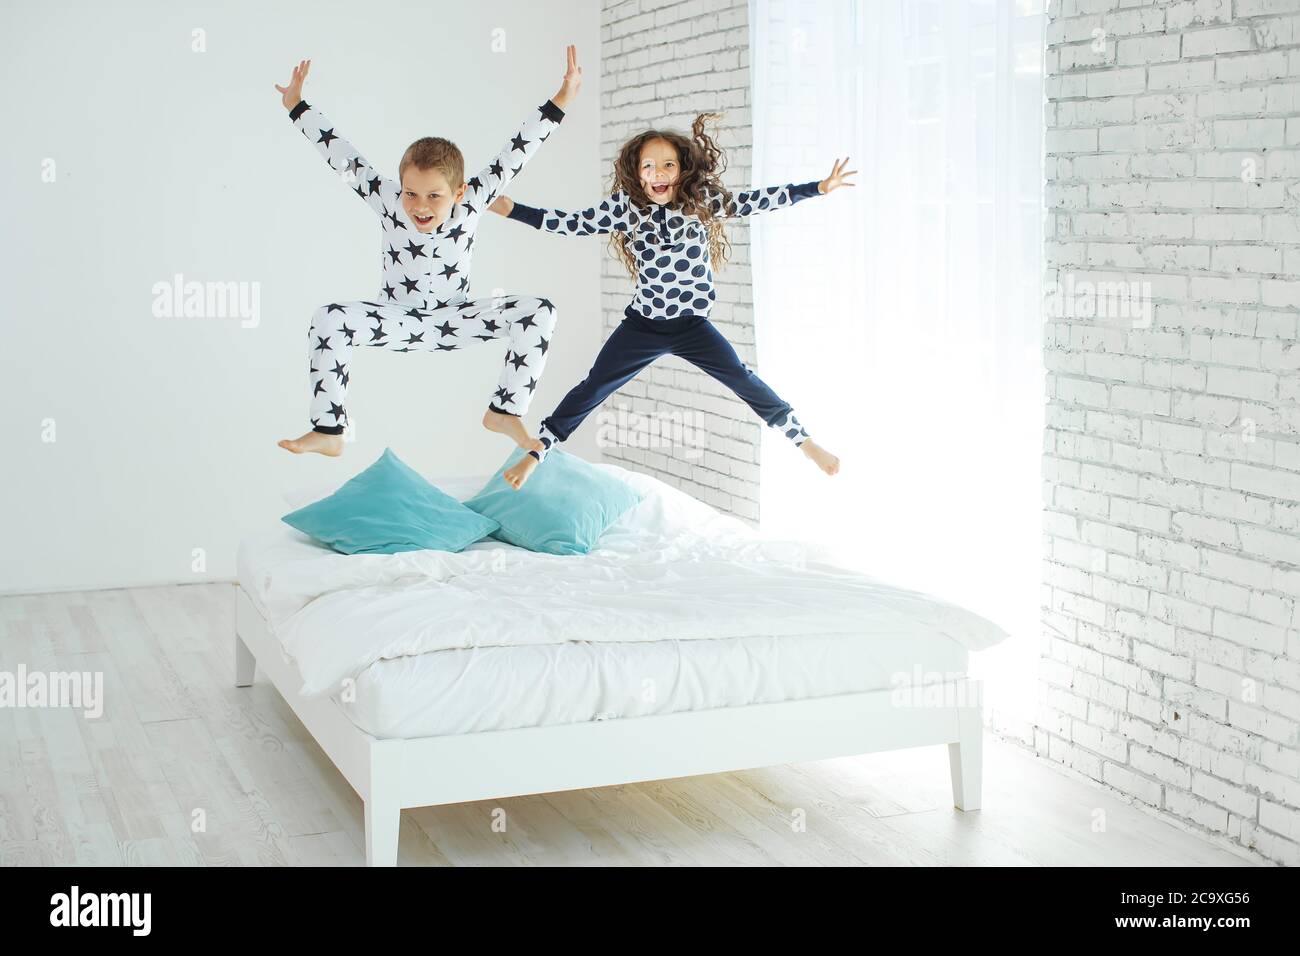 Les enfants sautent sur le lit Photo Stock - Alamy